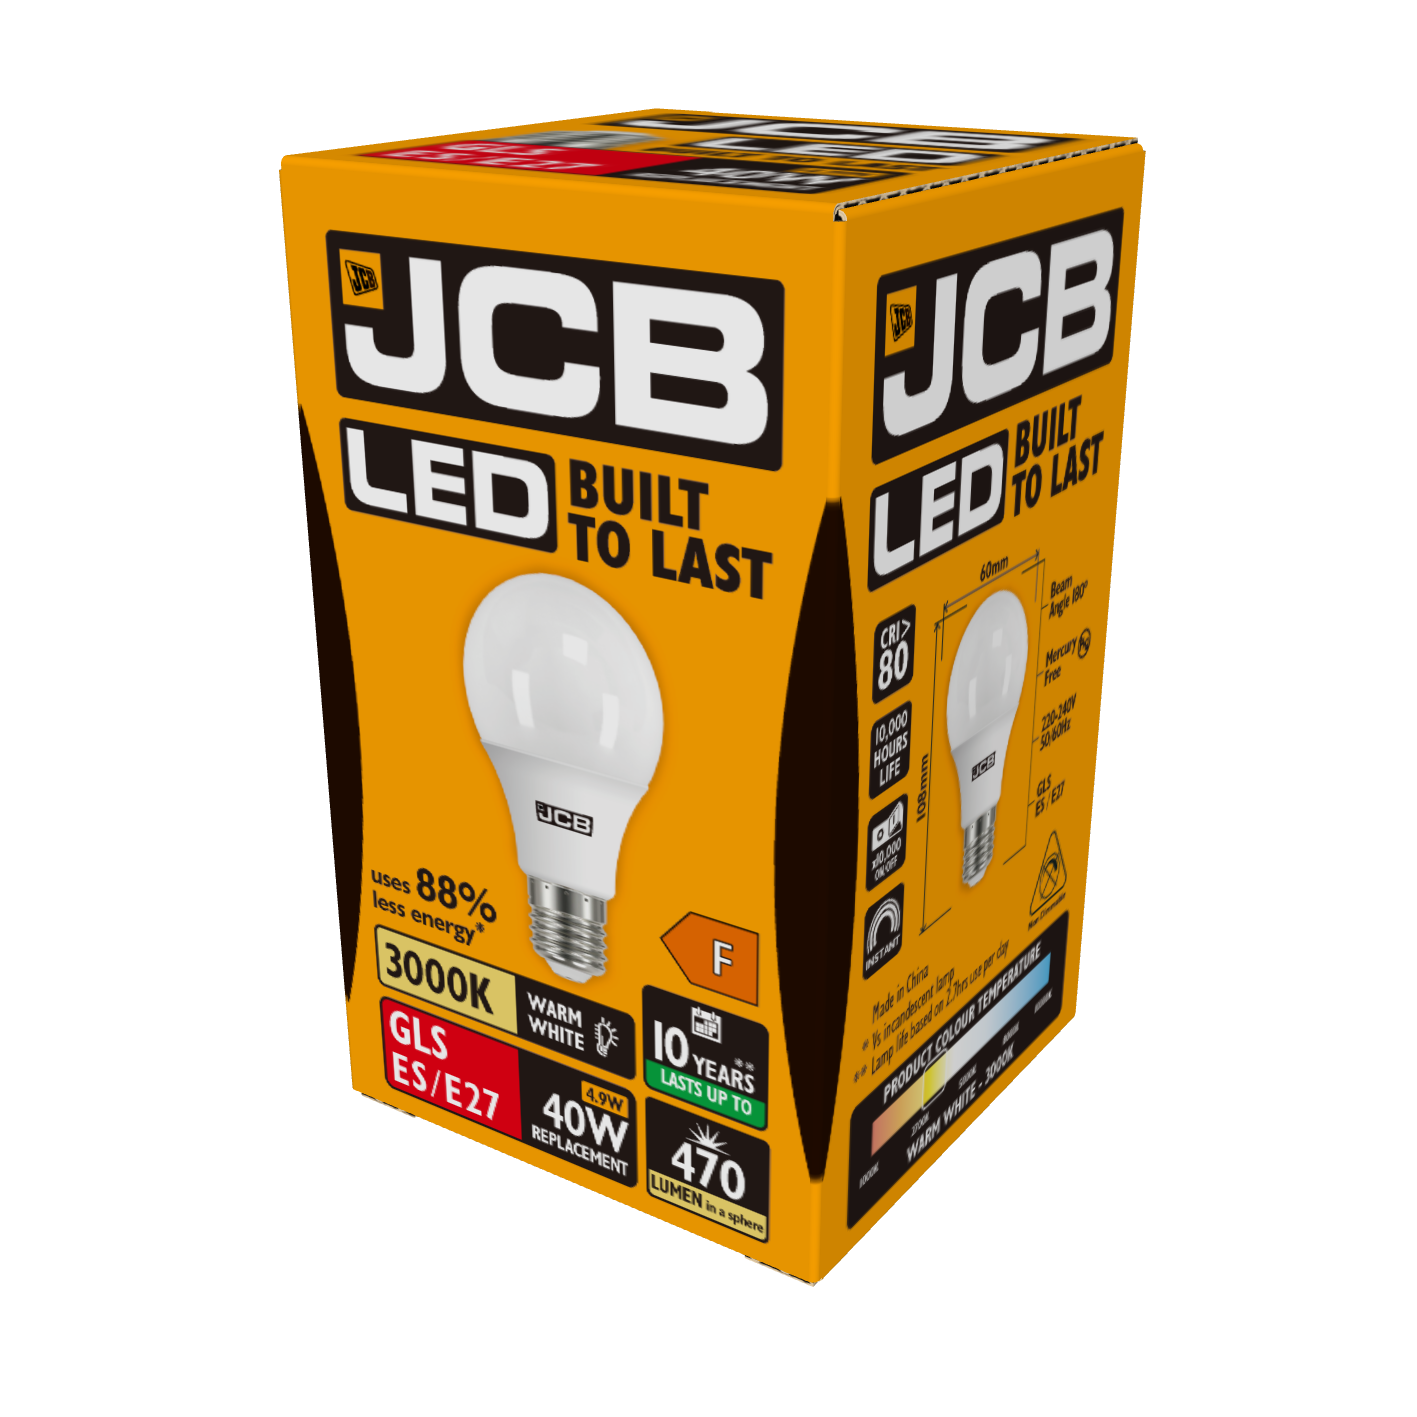 JCB LED GLS E27 (ES) 470 lm 4,9 W 3.000 K (Warmweiß), Packung mit 1 Stück